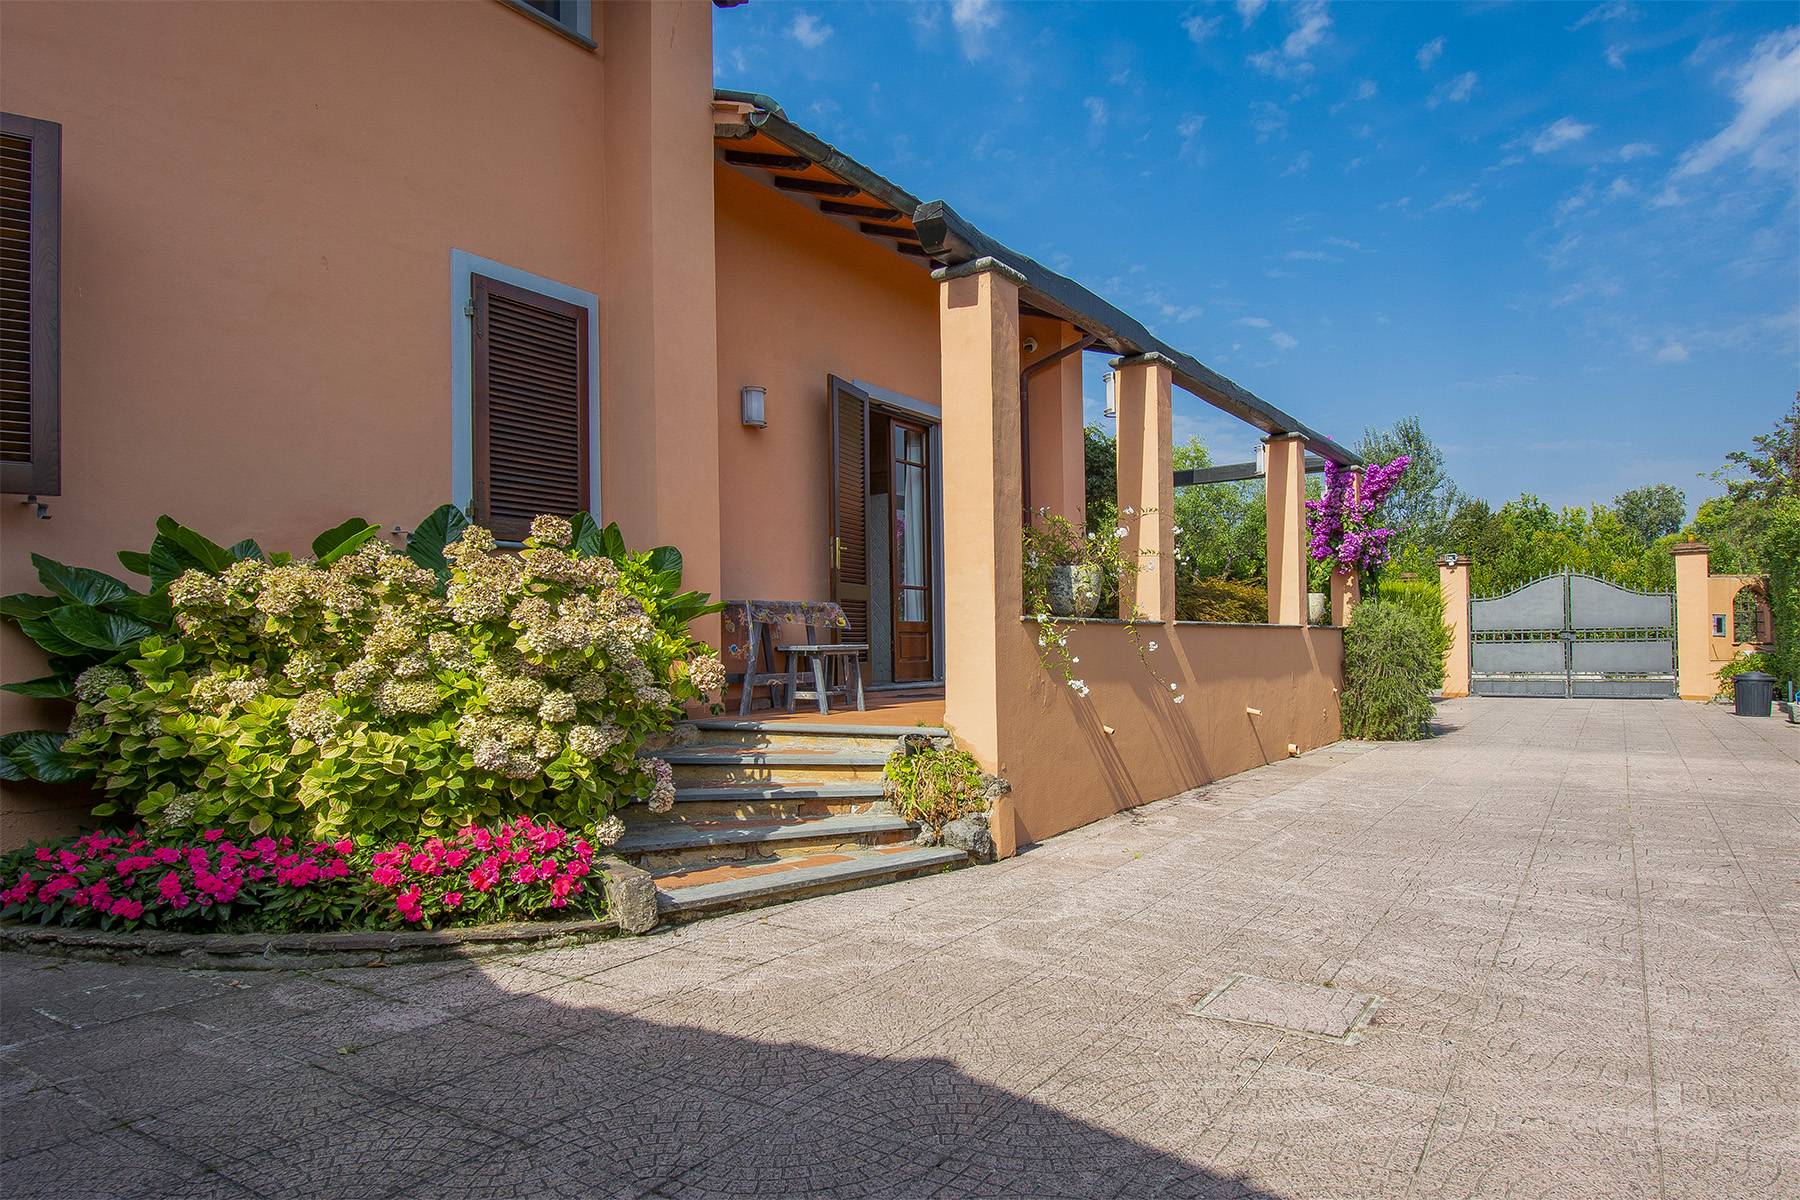 Villa in Vendita a Pietrasanta: 5 locali, 300 mq - Foto 3